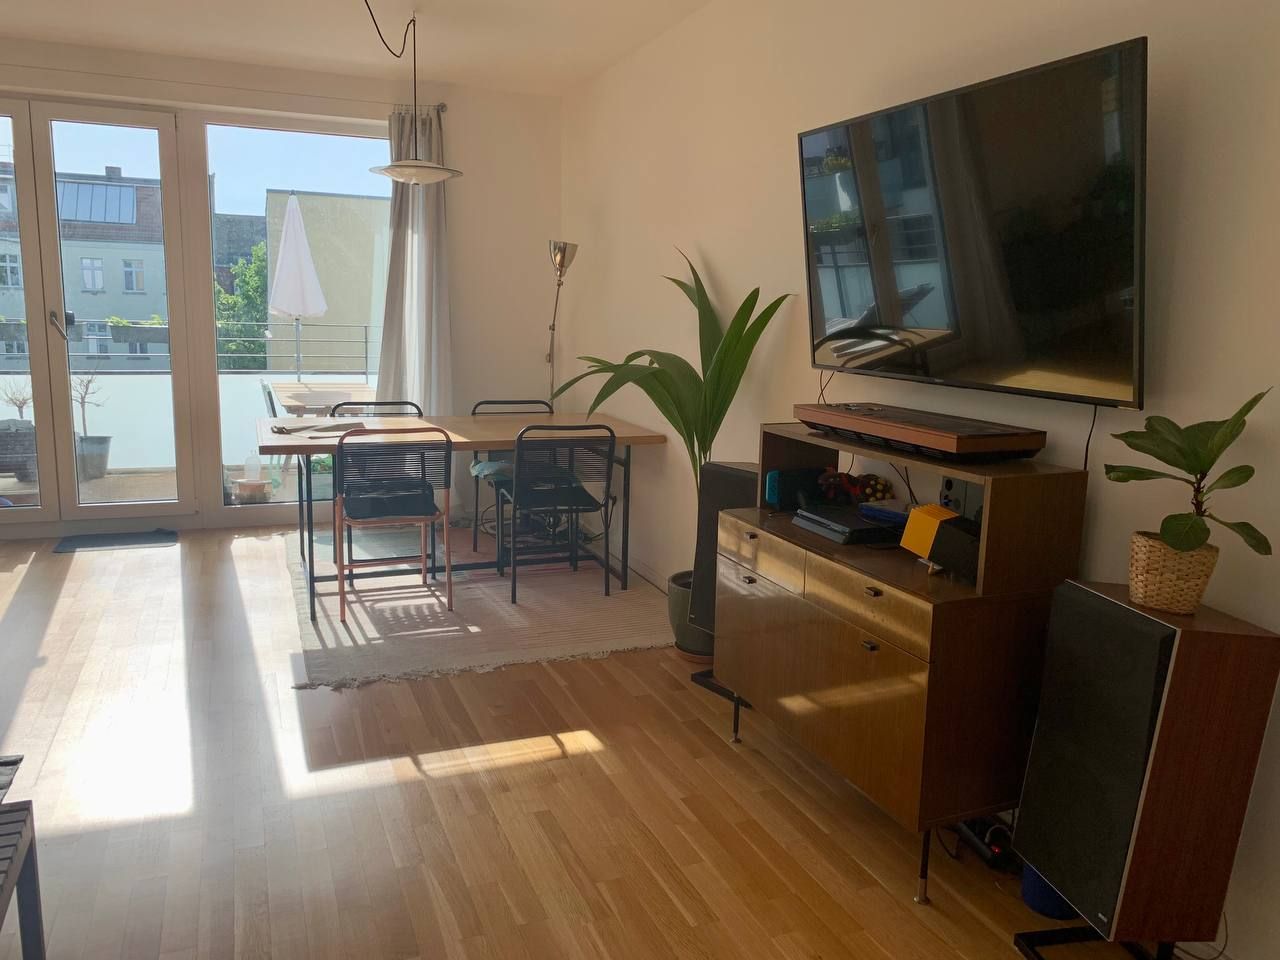 Modern, sunny & quiet 3-room apartment in Friedrichshain